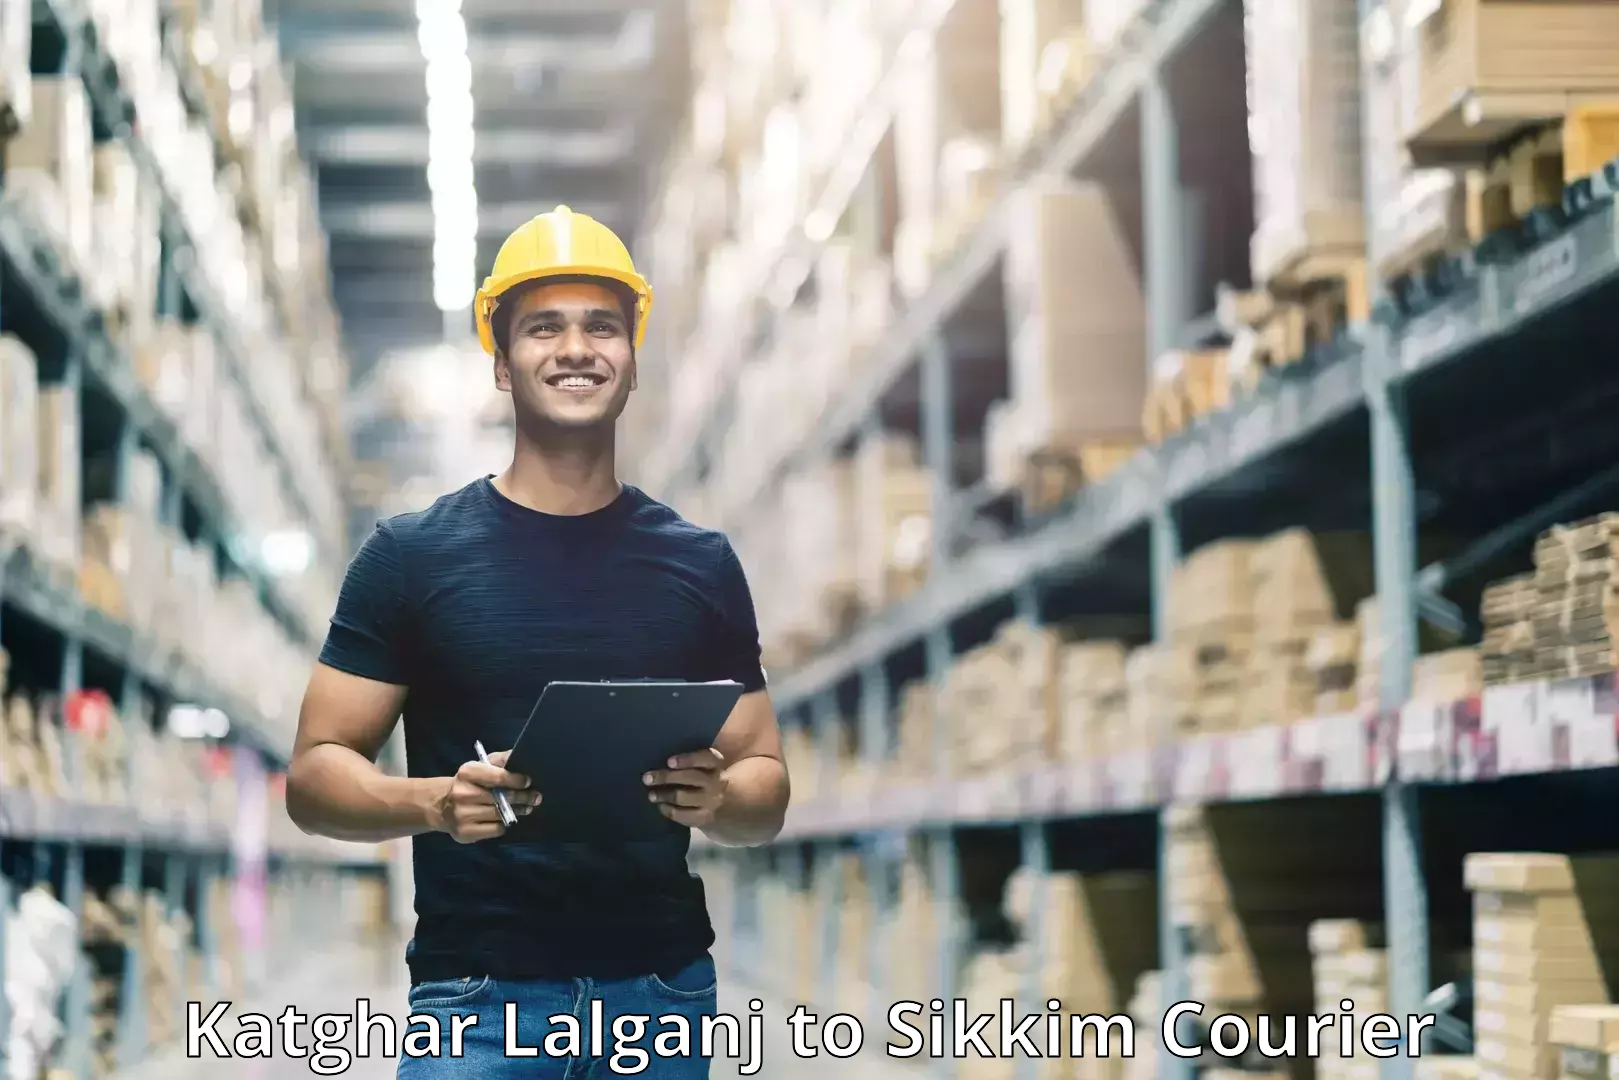 Customer-centric shipping Katghar Lalganj to North Sikkim